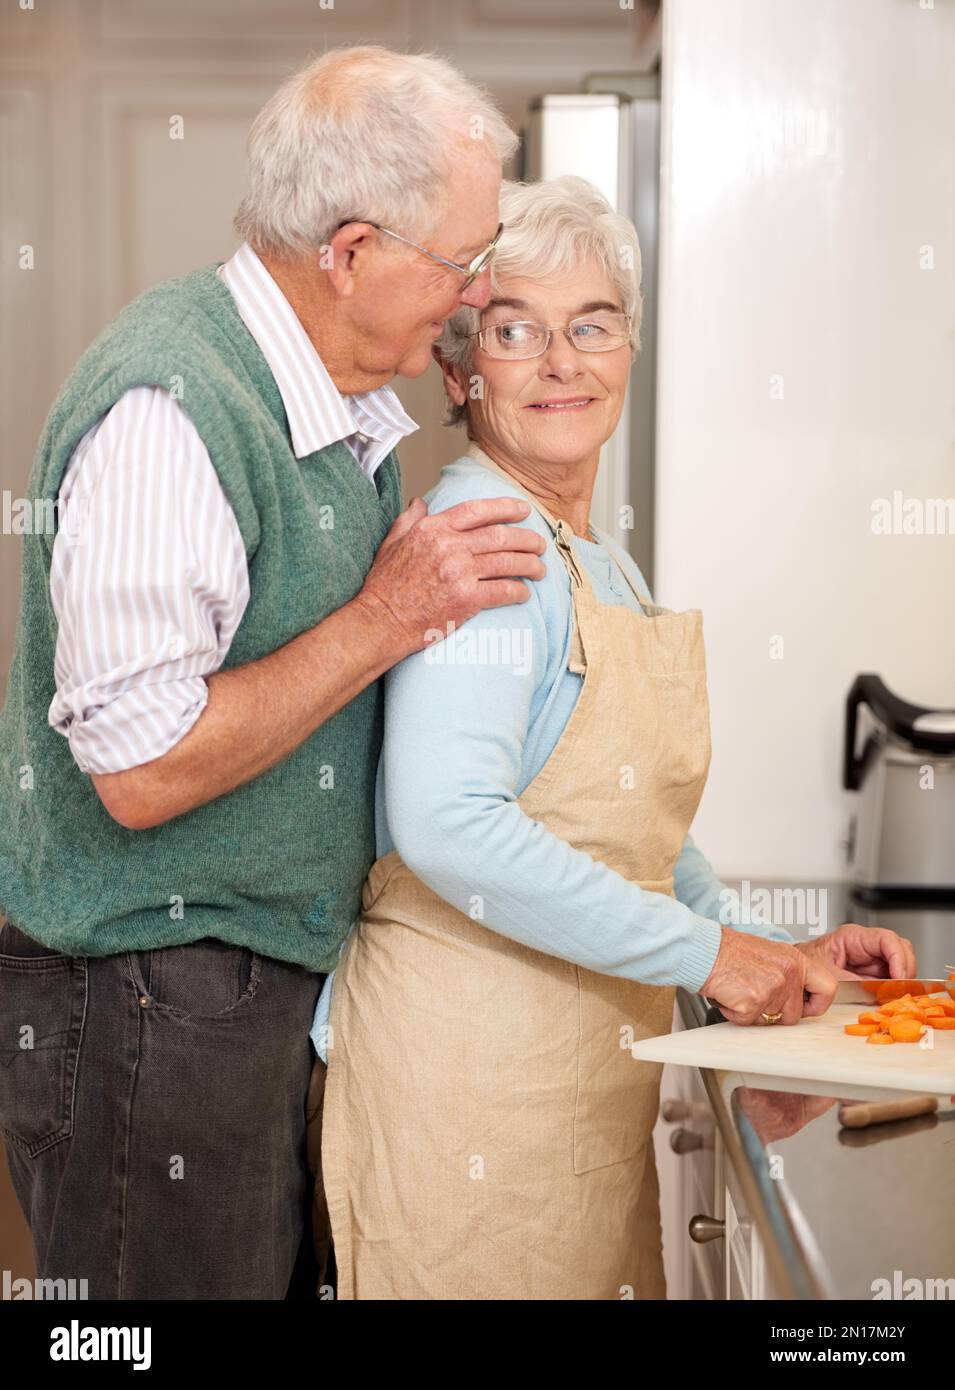 Es riecht köstlich, meine Liebe. Ein Seniorenpaar, das zusammen in der Küche zu Abend kocht. Stockfoto